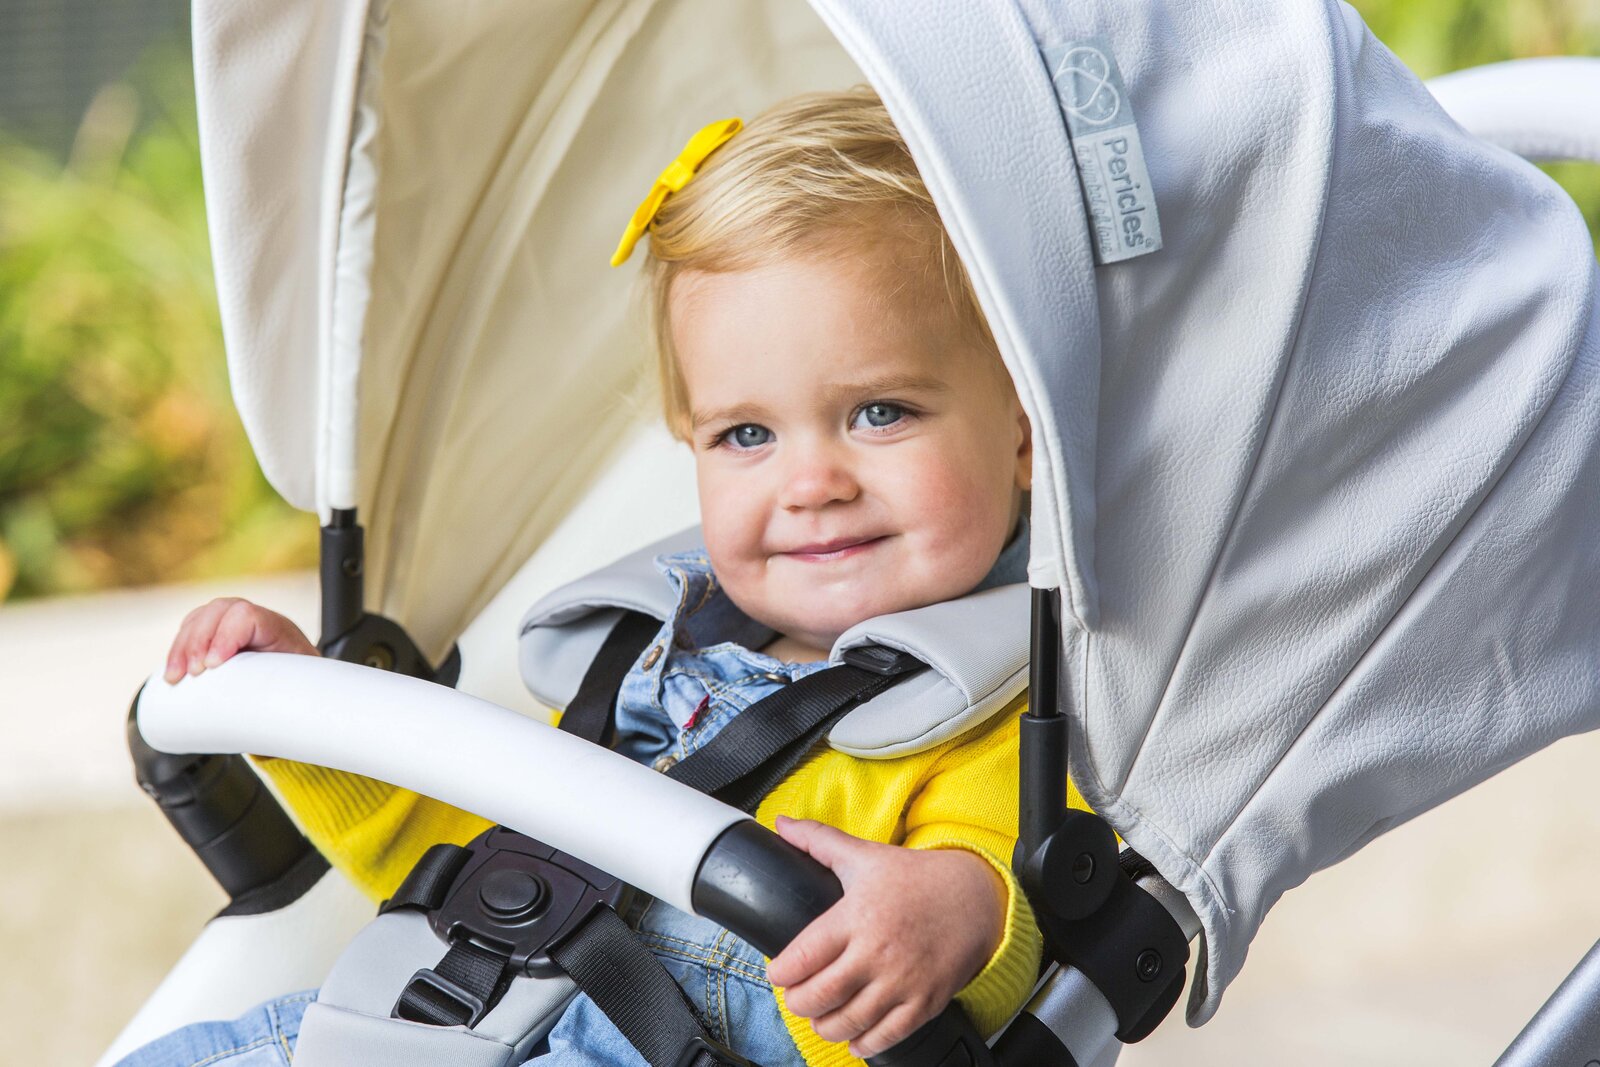 Périclès - le grand magasin en ligne pour bébés - tout pour votre bébé et  votre jeune enfant